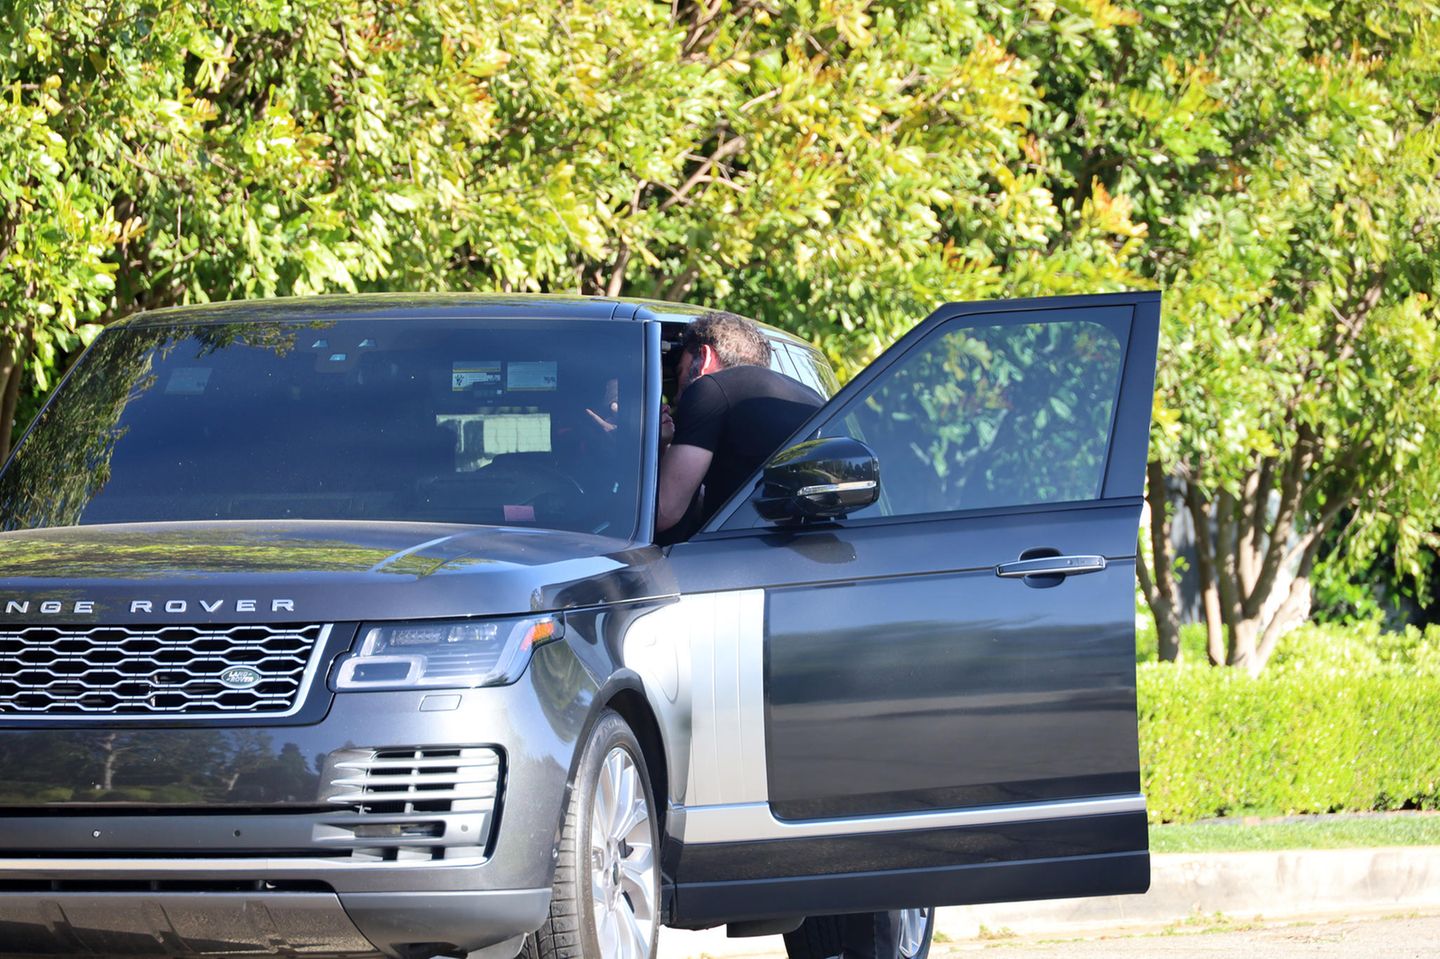 Jennifer Lopez und Ben Affleck küssen sich im Auto